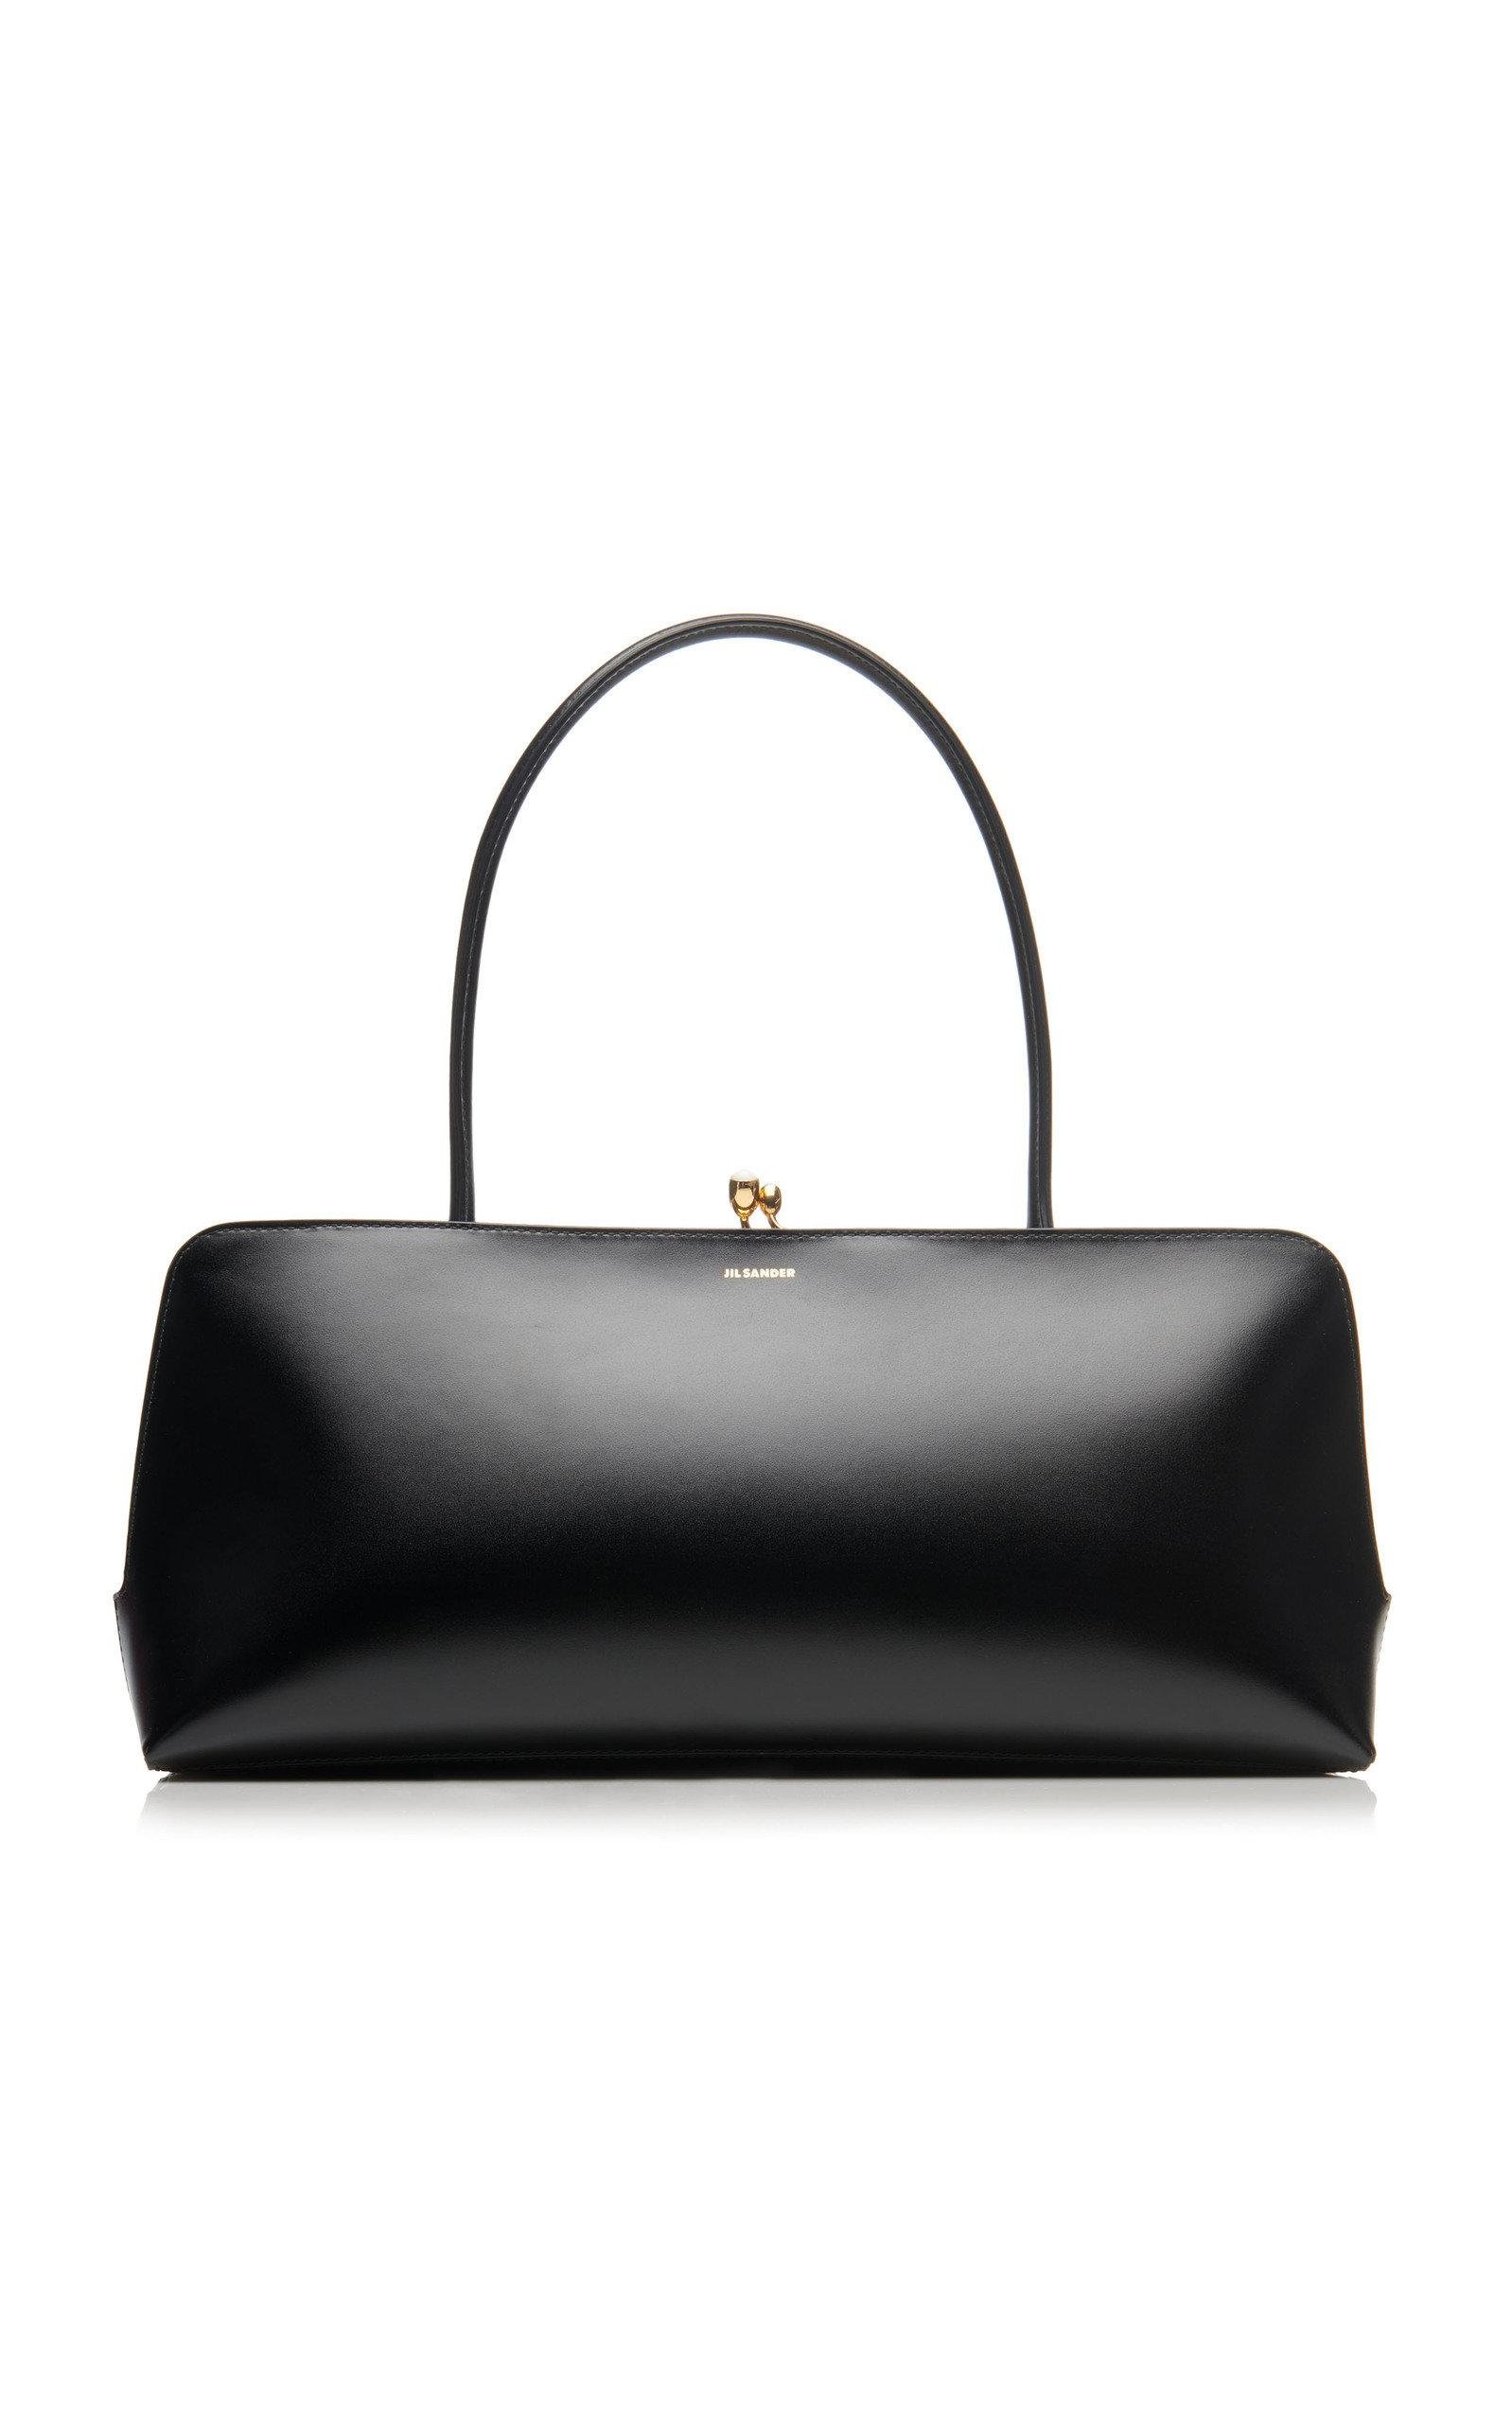 Jil Sander Medium Goji Frame Pearl Leather Top Handle Bag in Black - Lyst